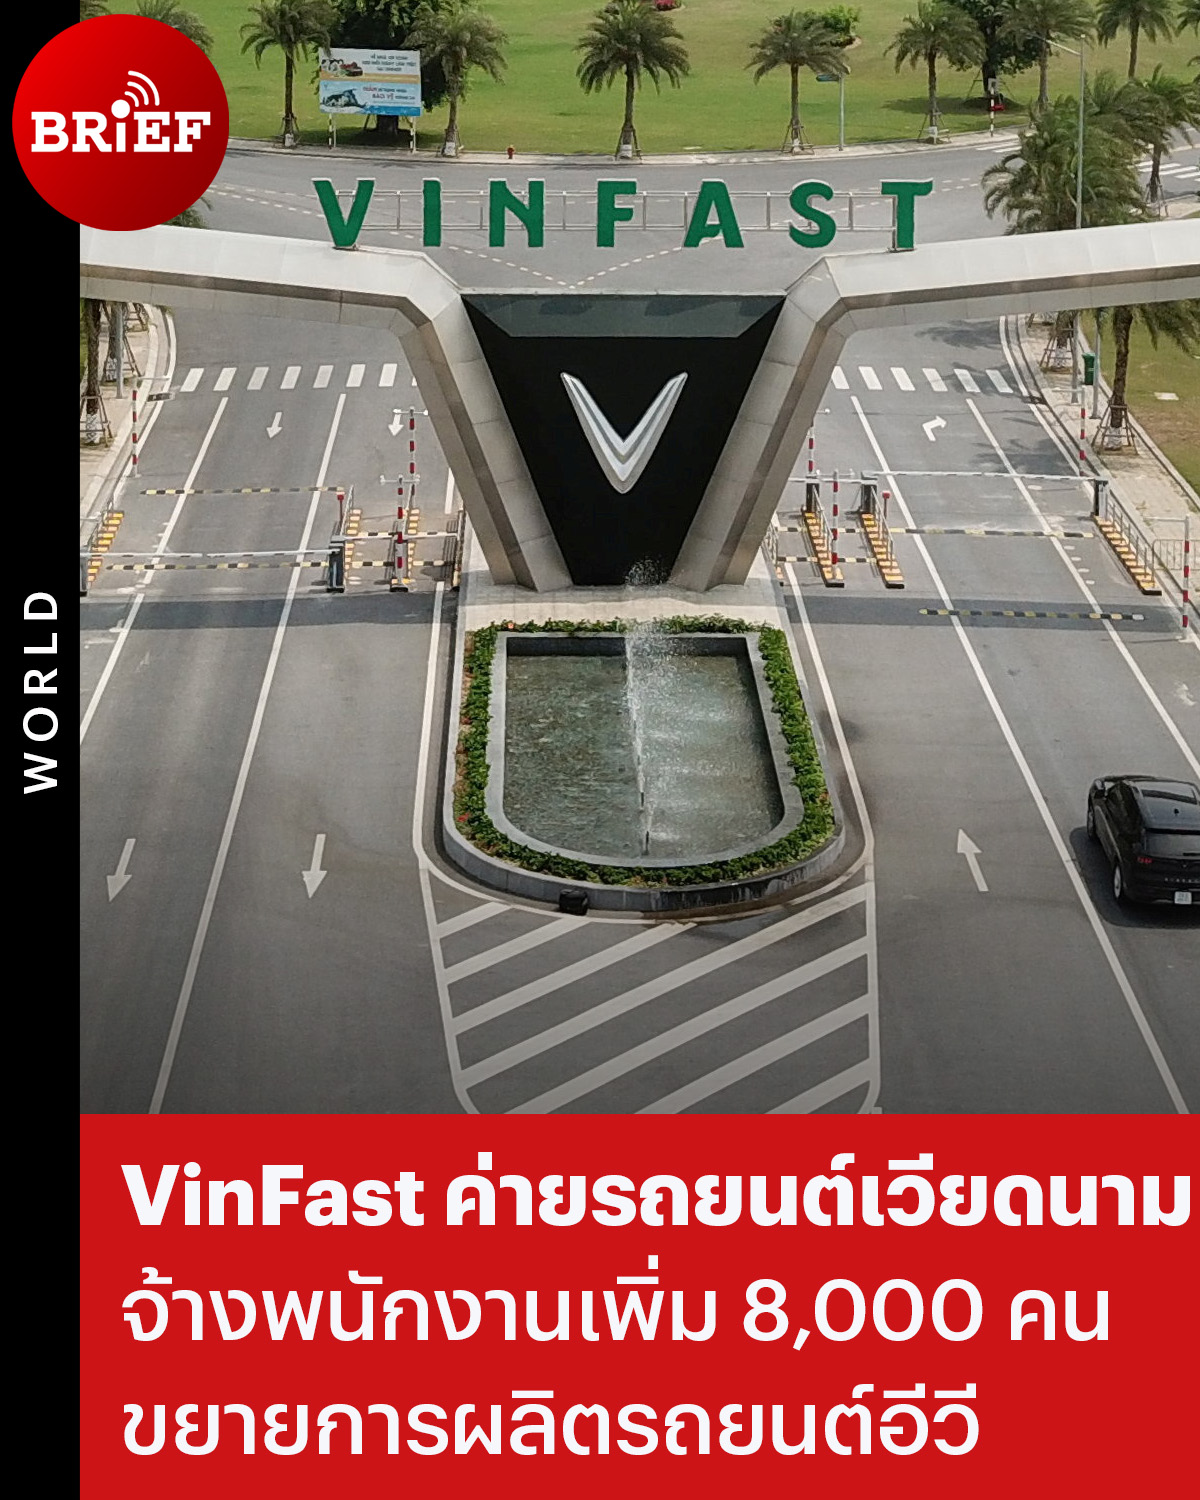 ⦿ VinFast ค่ายรถยนต์เวียดนามจ้างพนักงานเพิ่ม 8,000 คน เพื่อขยายการผลิตรถยนต์อีวี